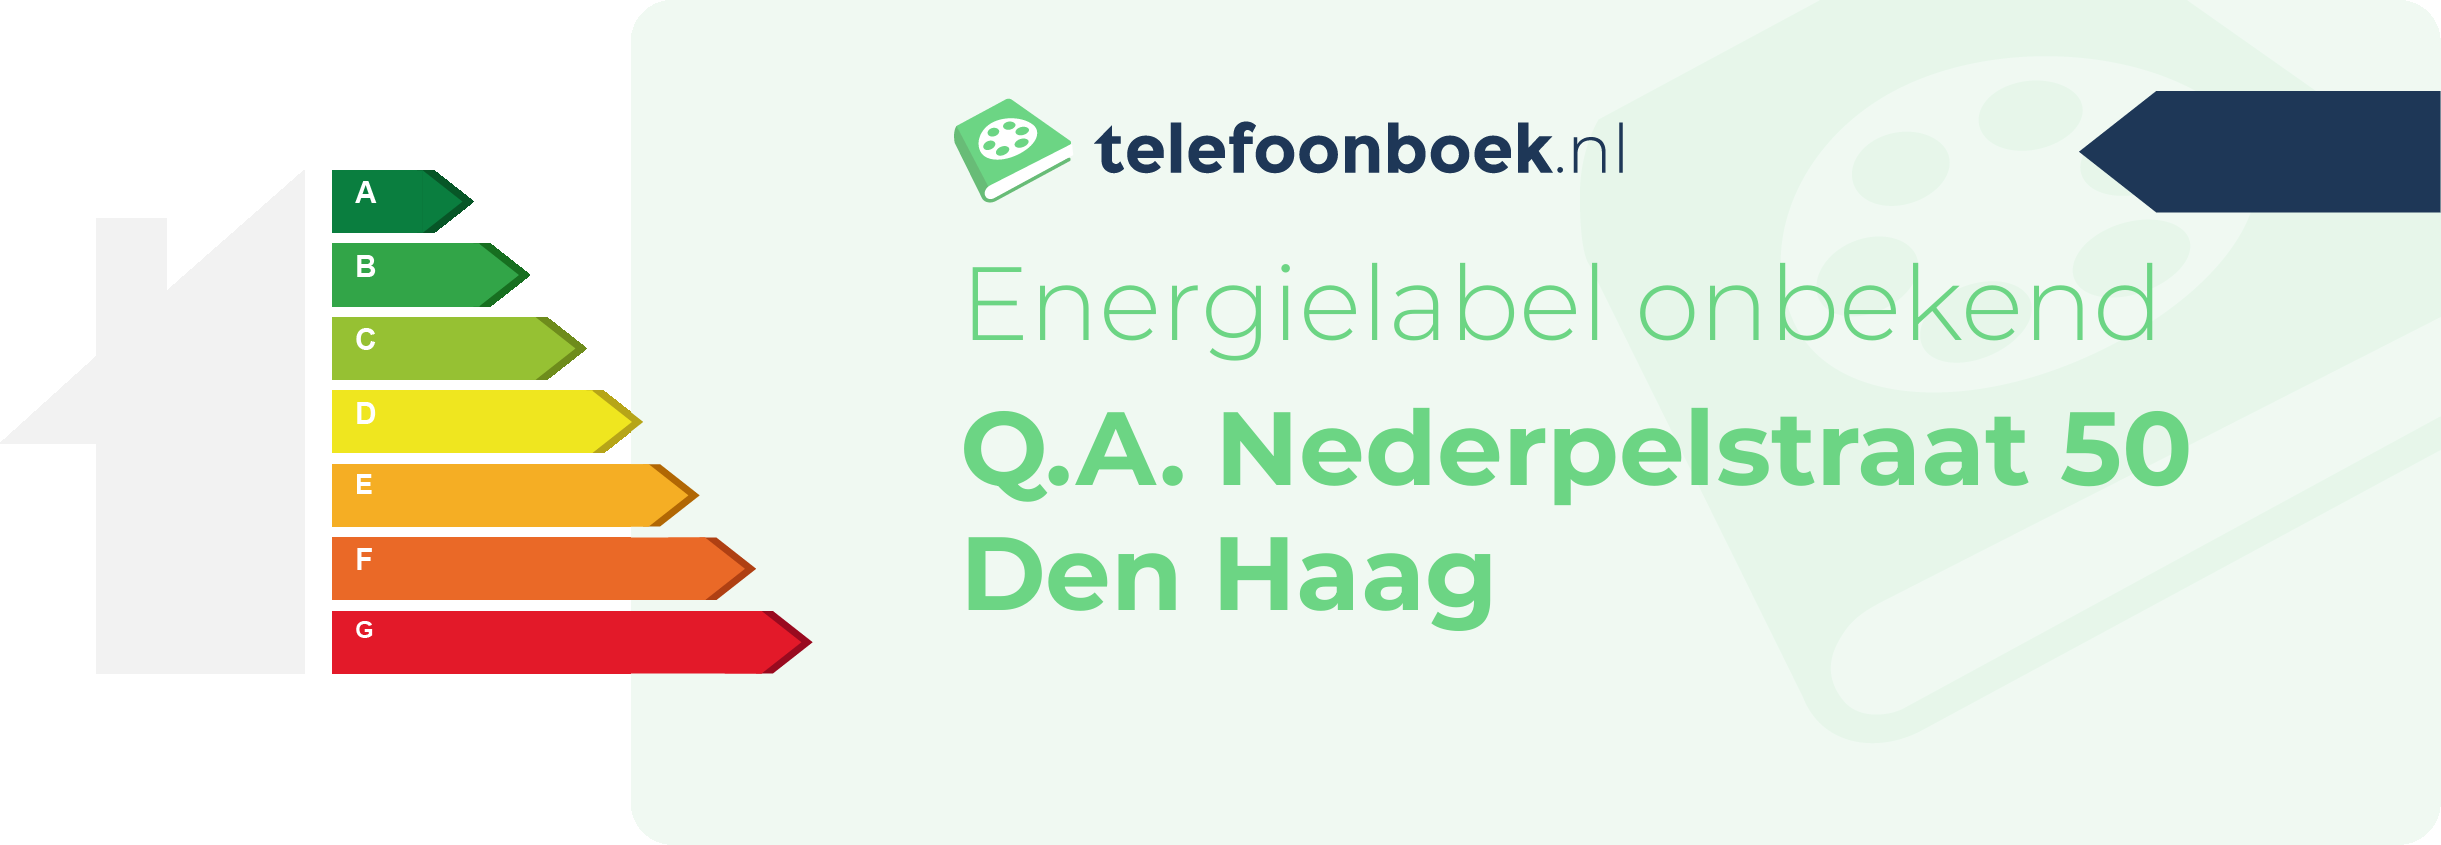 Energielabel Q.A. Nederpelstraat 50 Den Haag